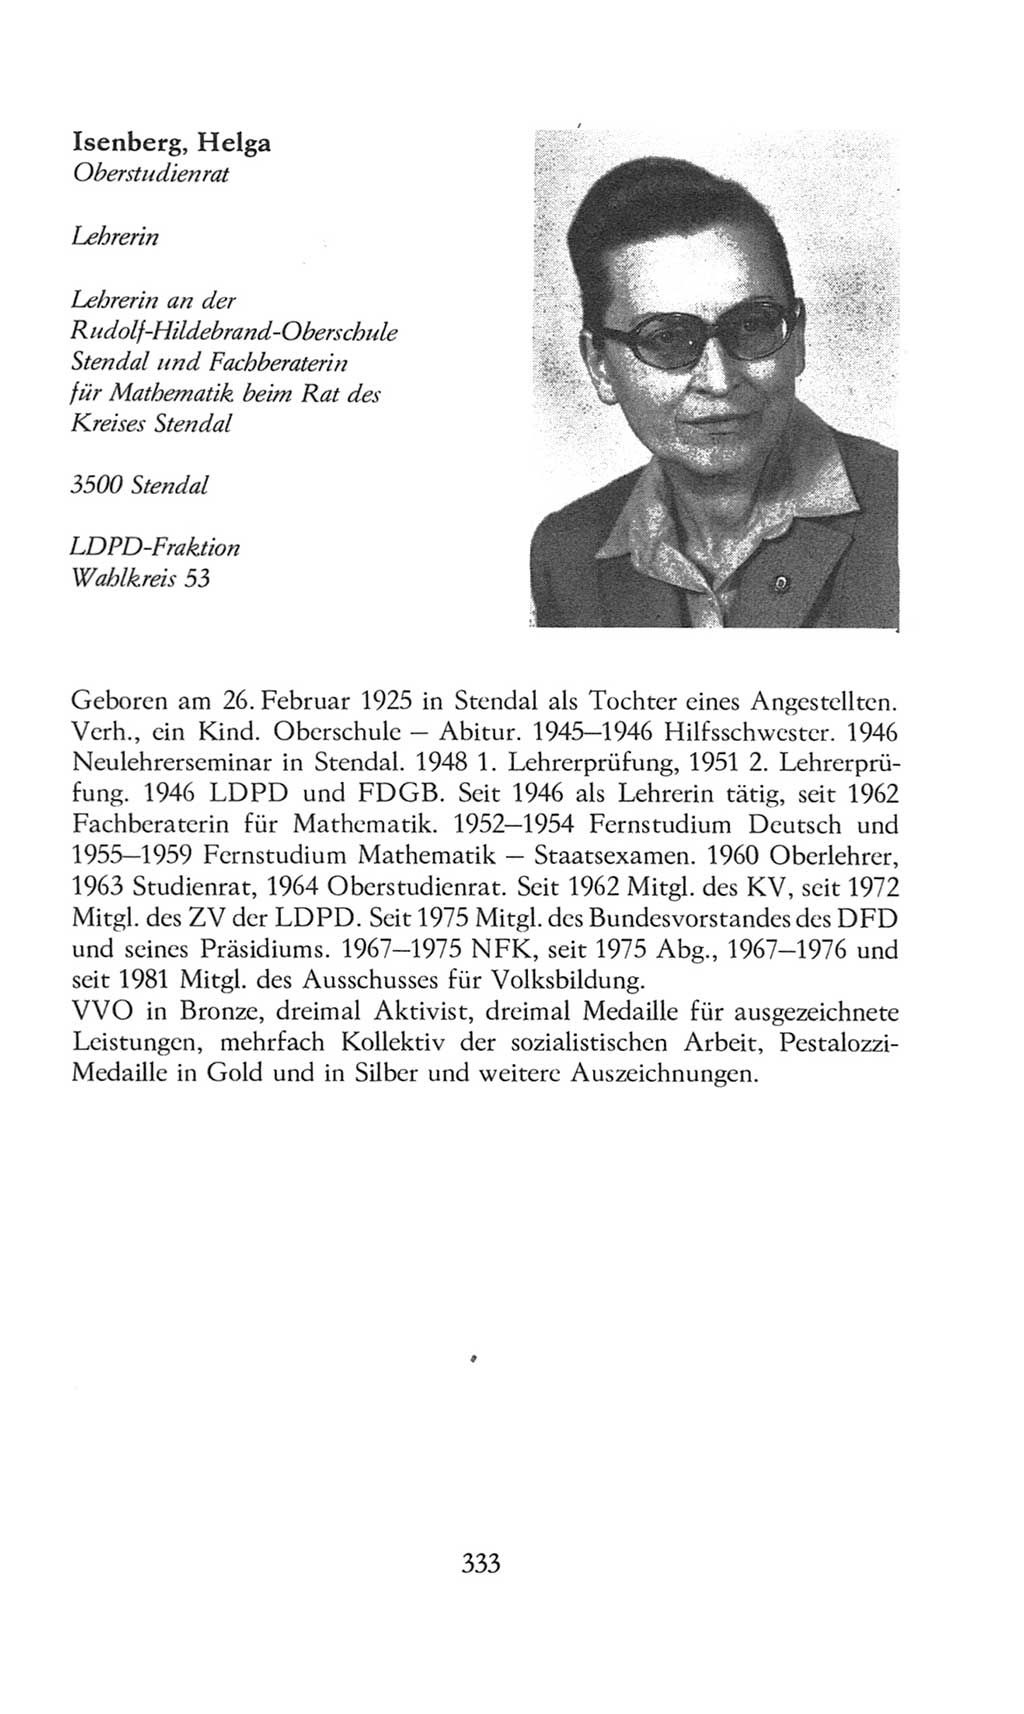 Volkskammer (VK) der Deutschen Demokratischen Republik (DDR), 8. Wahlperiode 1981-1986, Seite 333 (VK. DDR 8. WP. 1981-1986, S. 333)